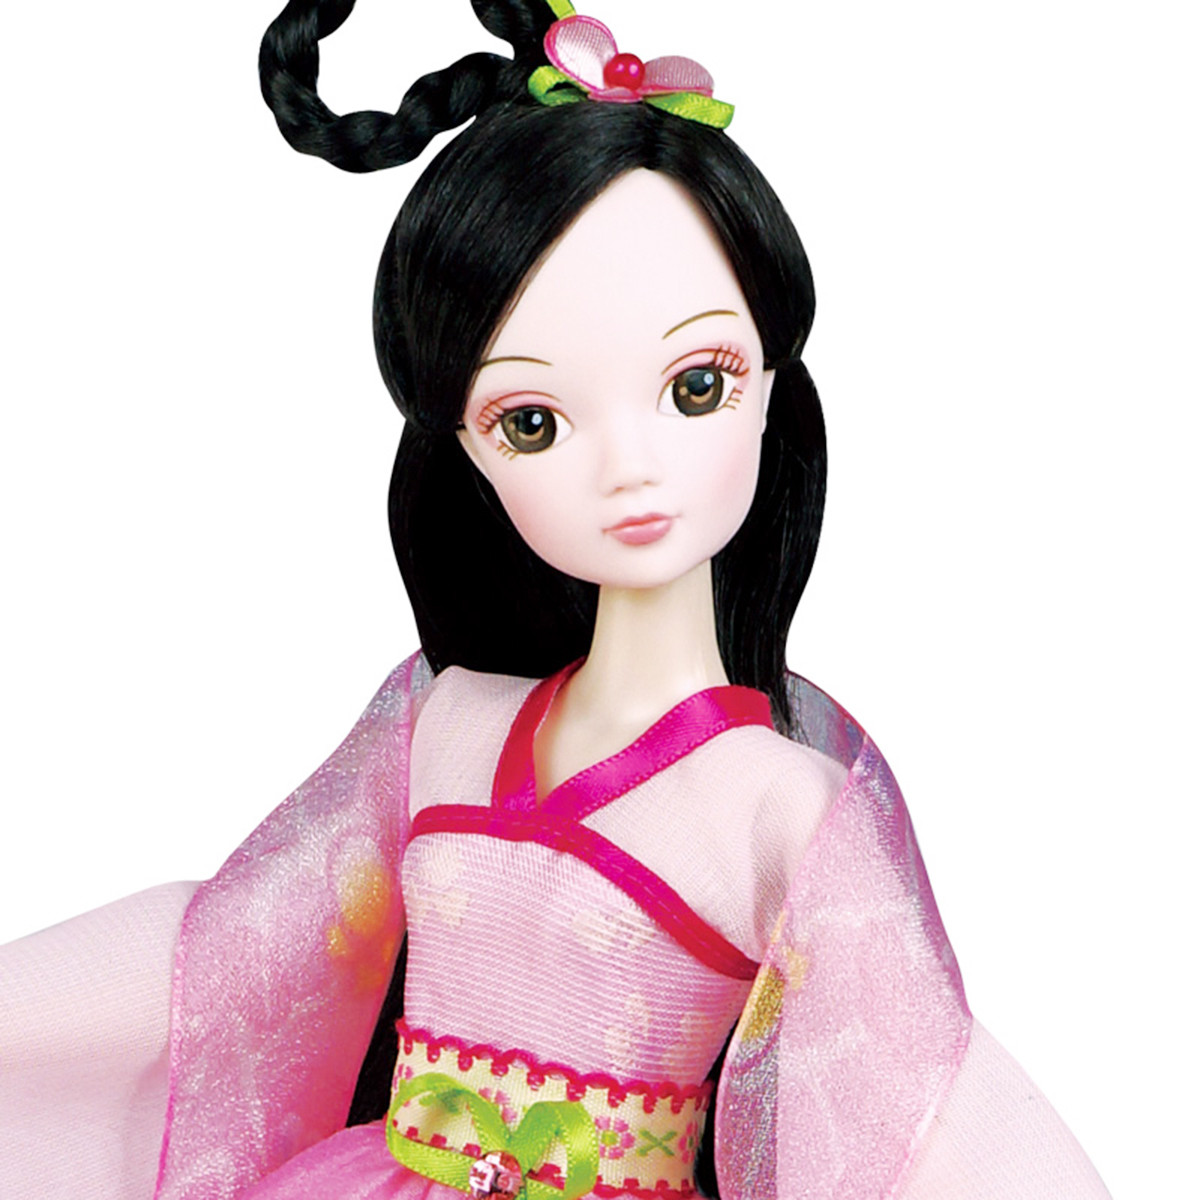 可儿娃娃七仙女粉衣仙子古典中国风芭比娃娃玩具儿童玩具礼盒装